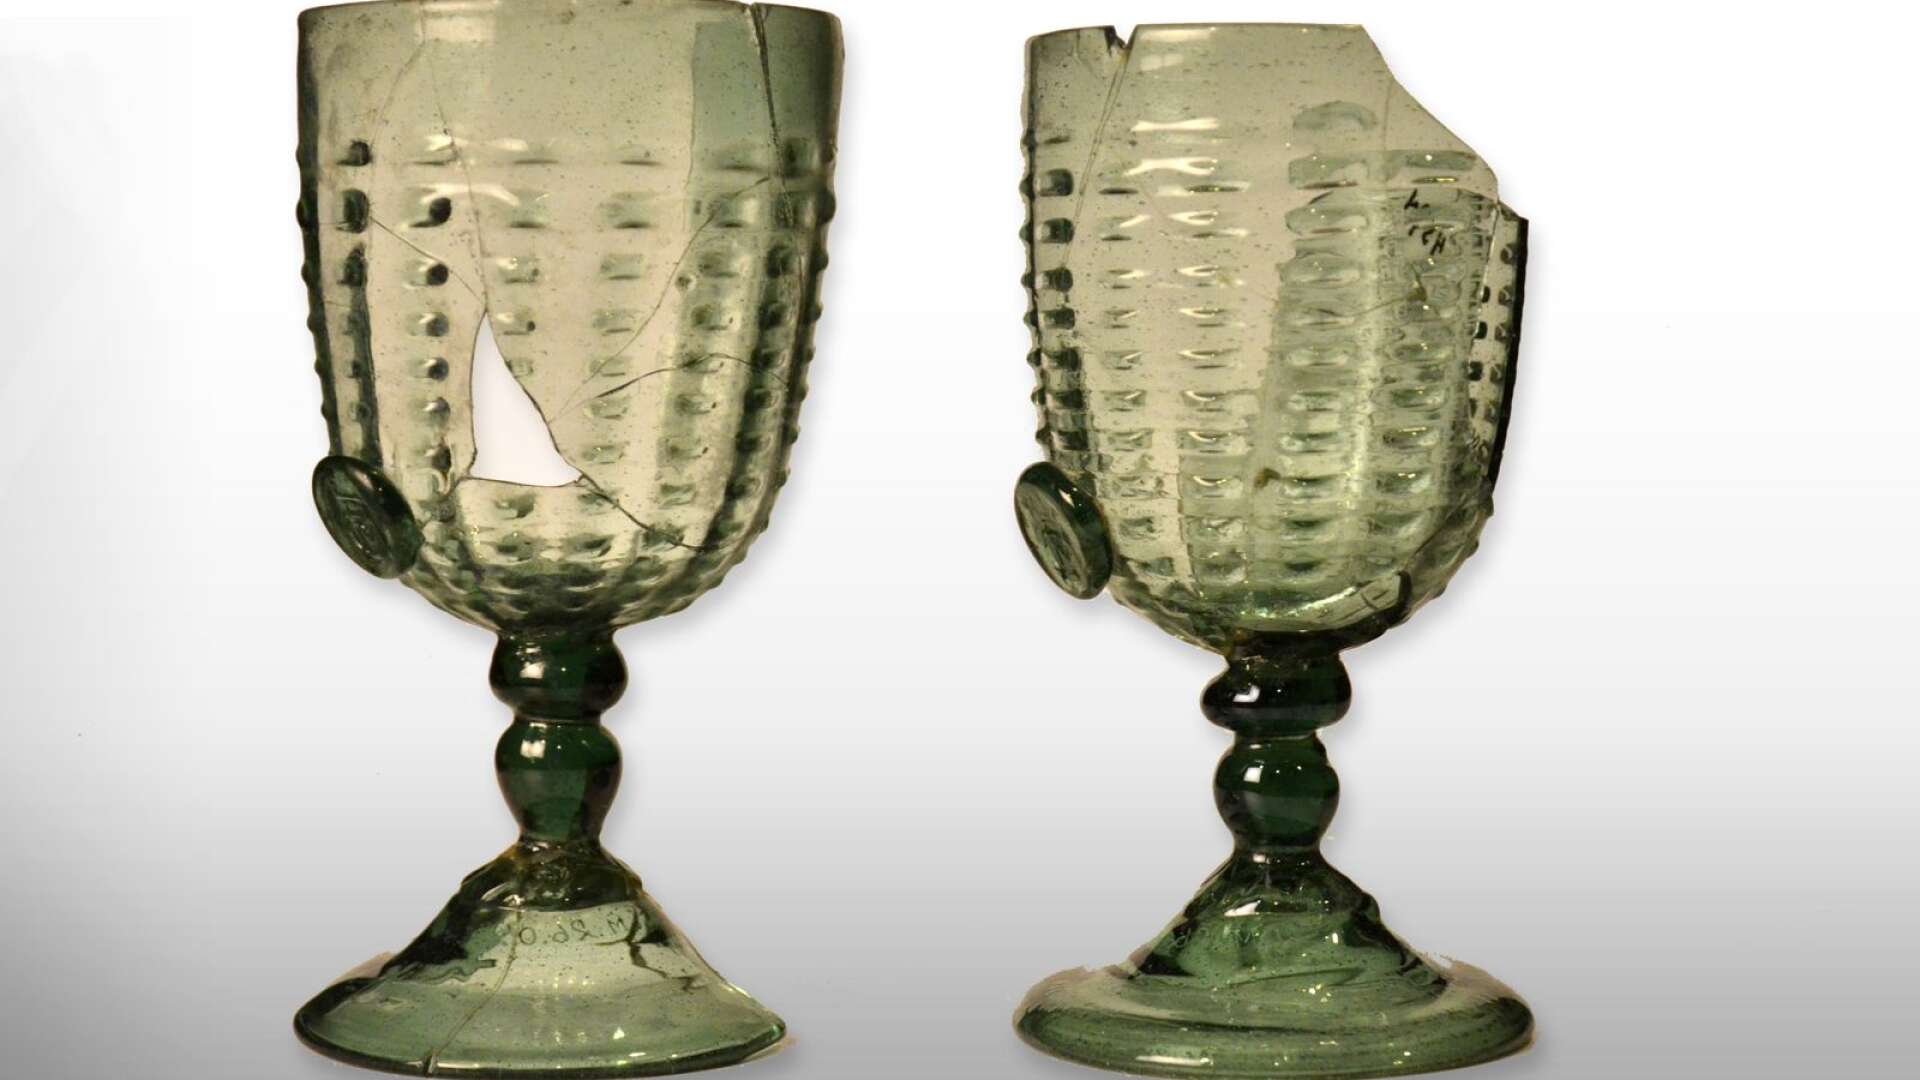 Hertig Karls originalglas från 1500-talet ingår i Sörmlands museums samlingar.